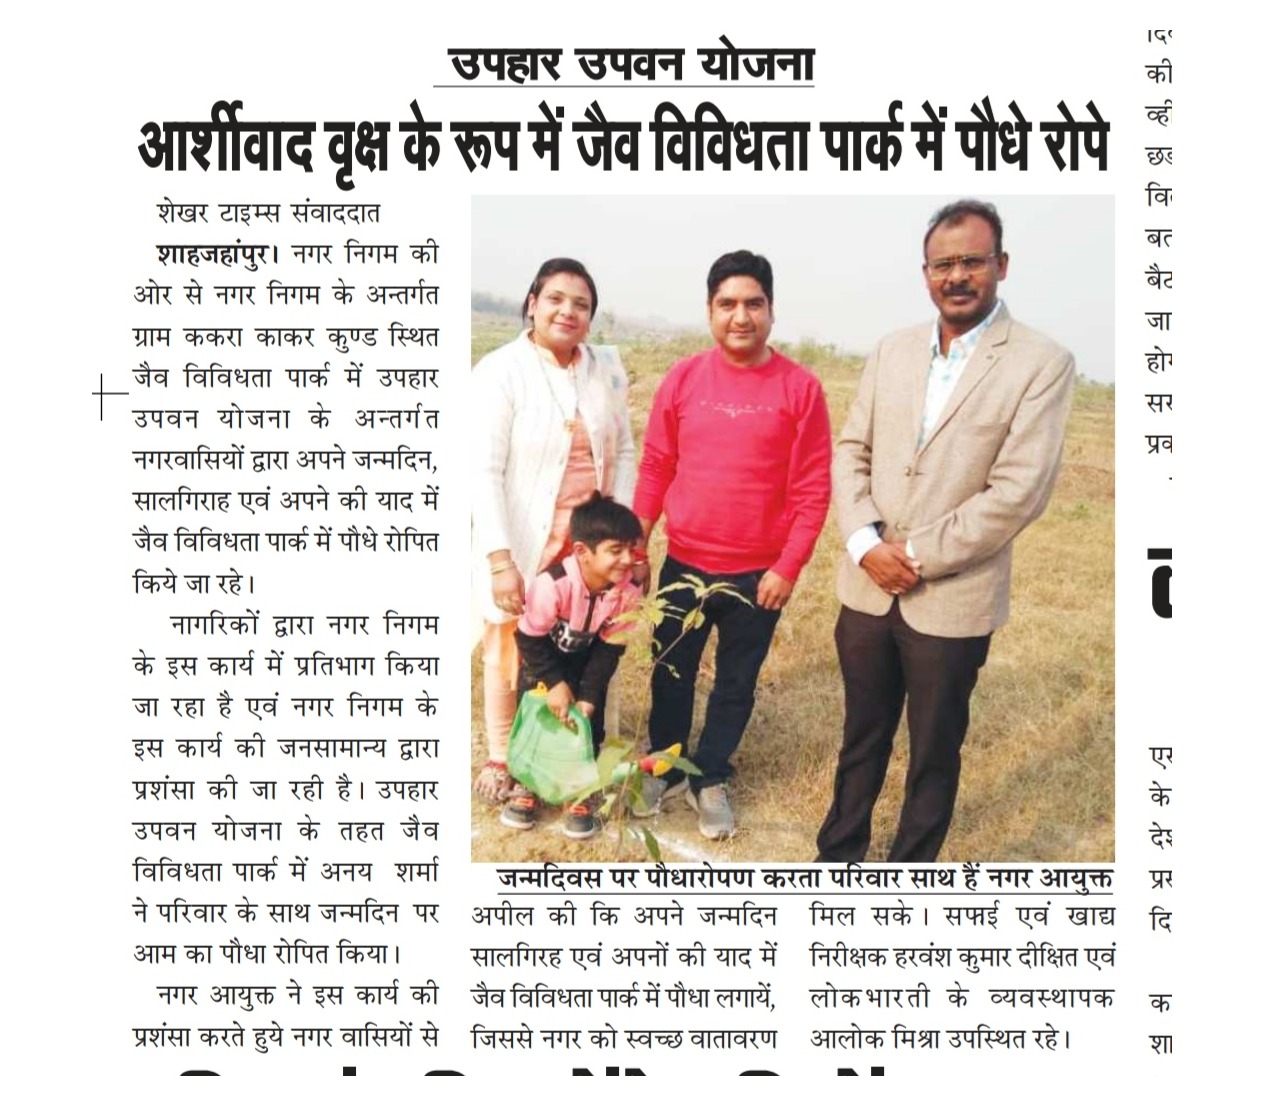 शाहजहाँपुर में स्थित ककरा काकर कुंड के जैव विविधता पार्क में नगरवासियों द्वारा उपहार उपवन योजना के अन्तर्गत पौधरोपण किए जाने के संबंध में